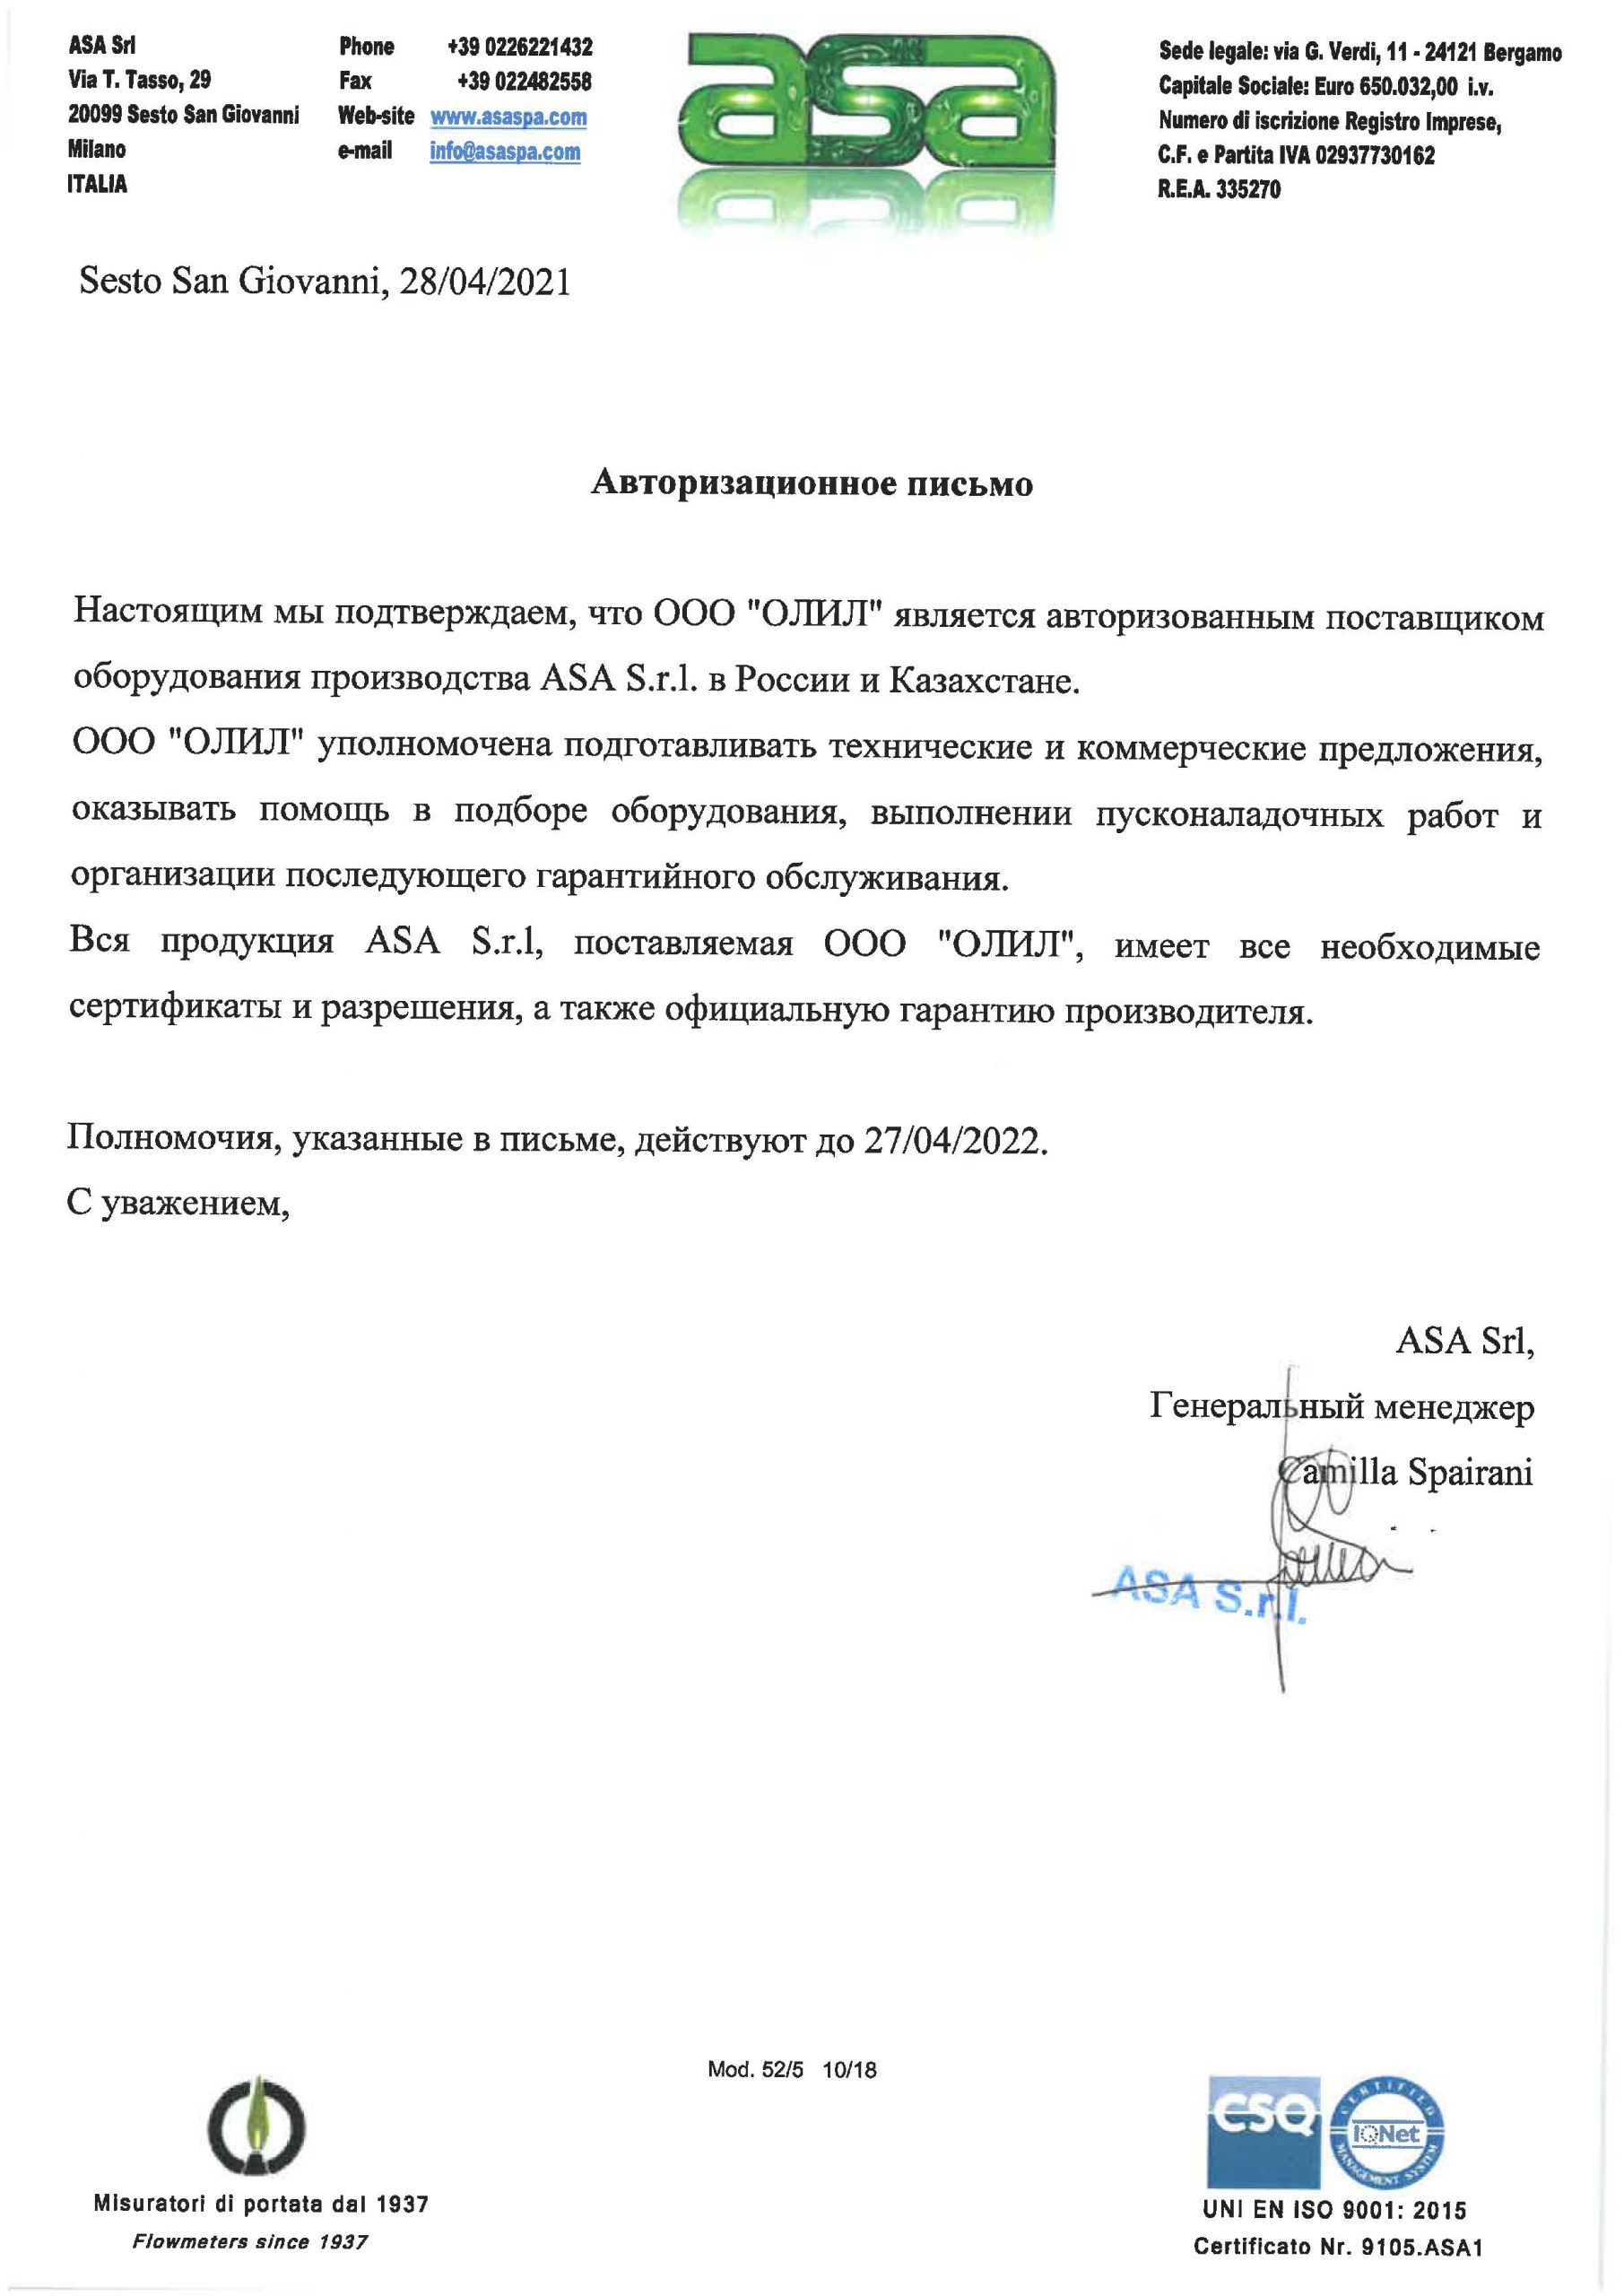 Сертификат официального дистрибьютора ASA в России